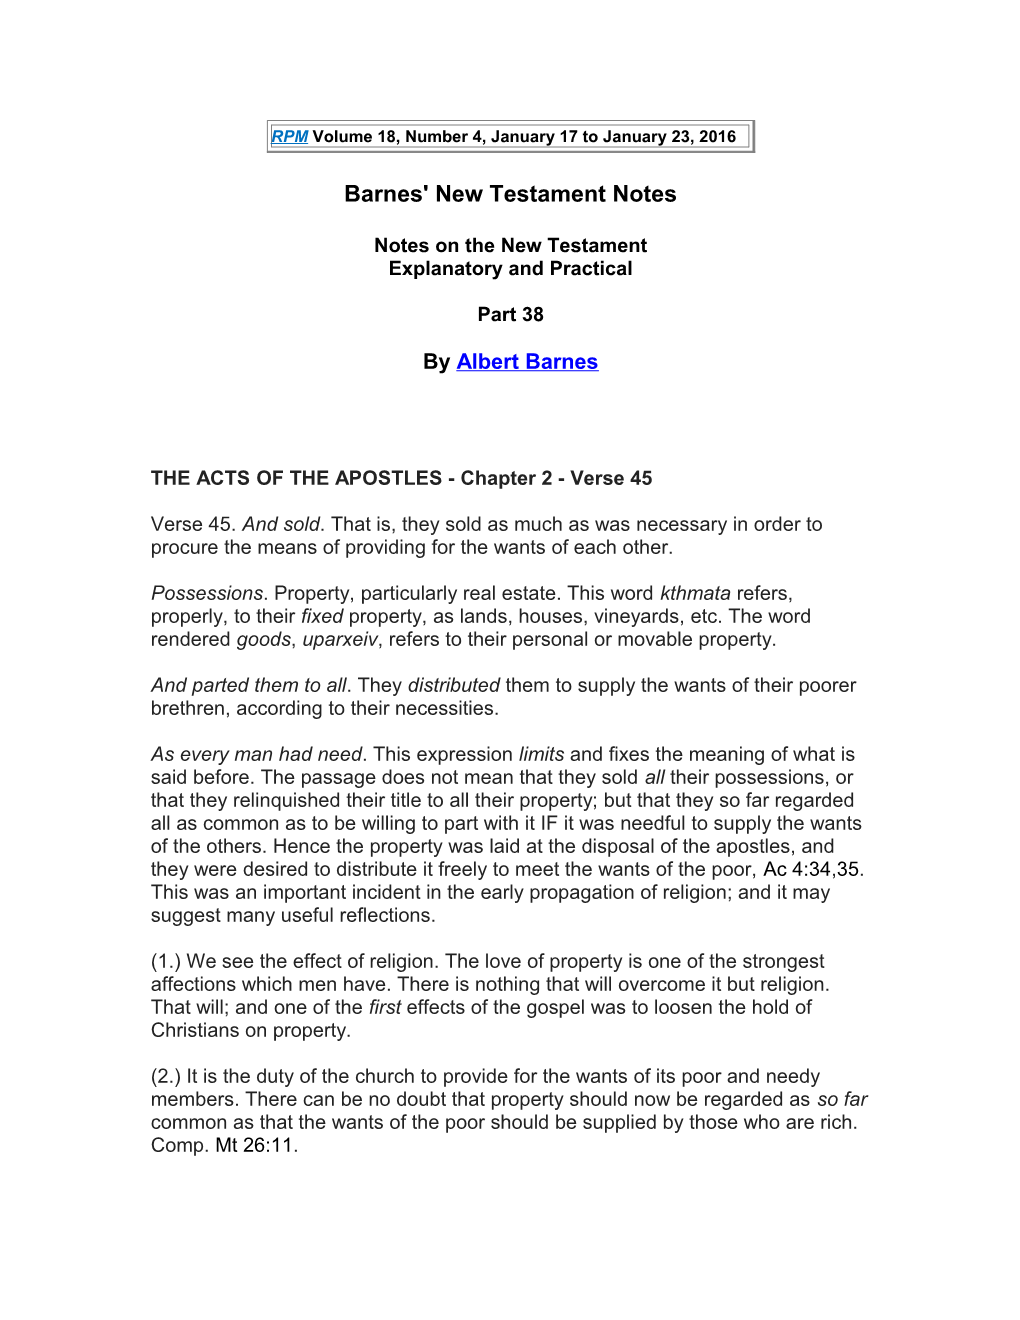 Barnes' New Testament Notes s1